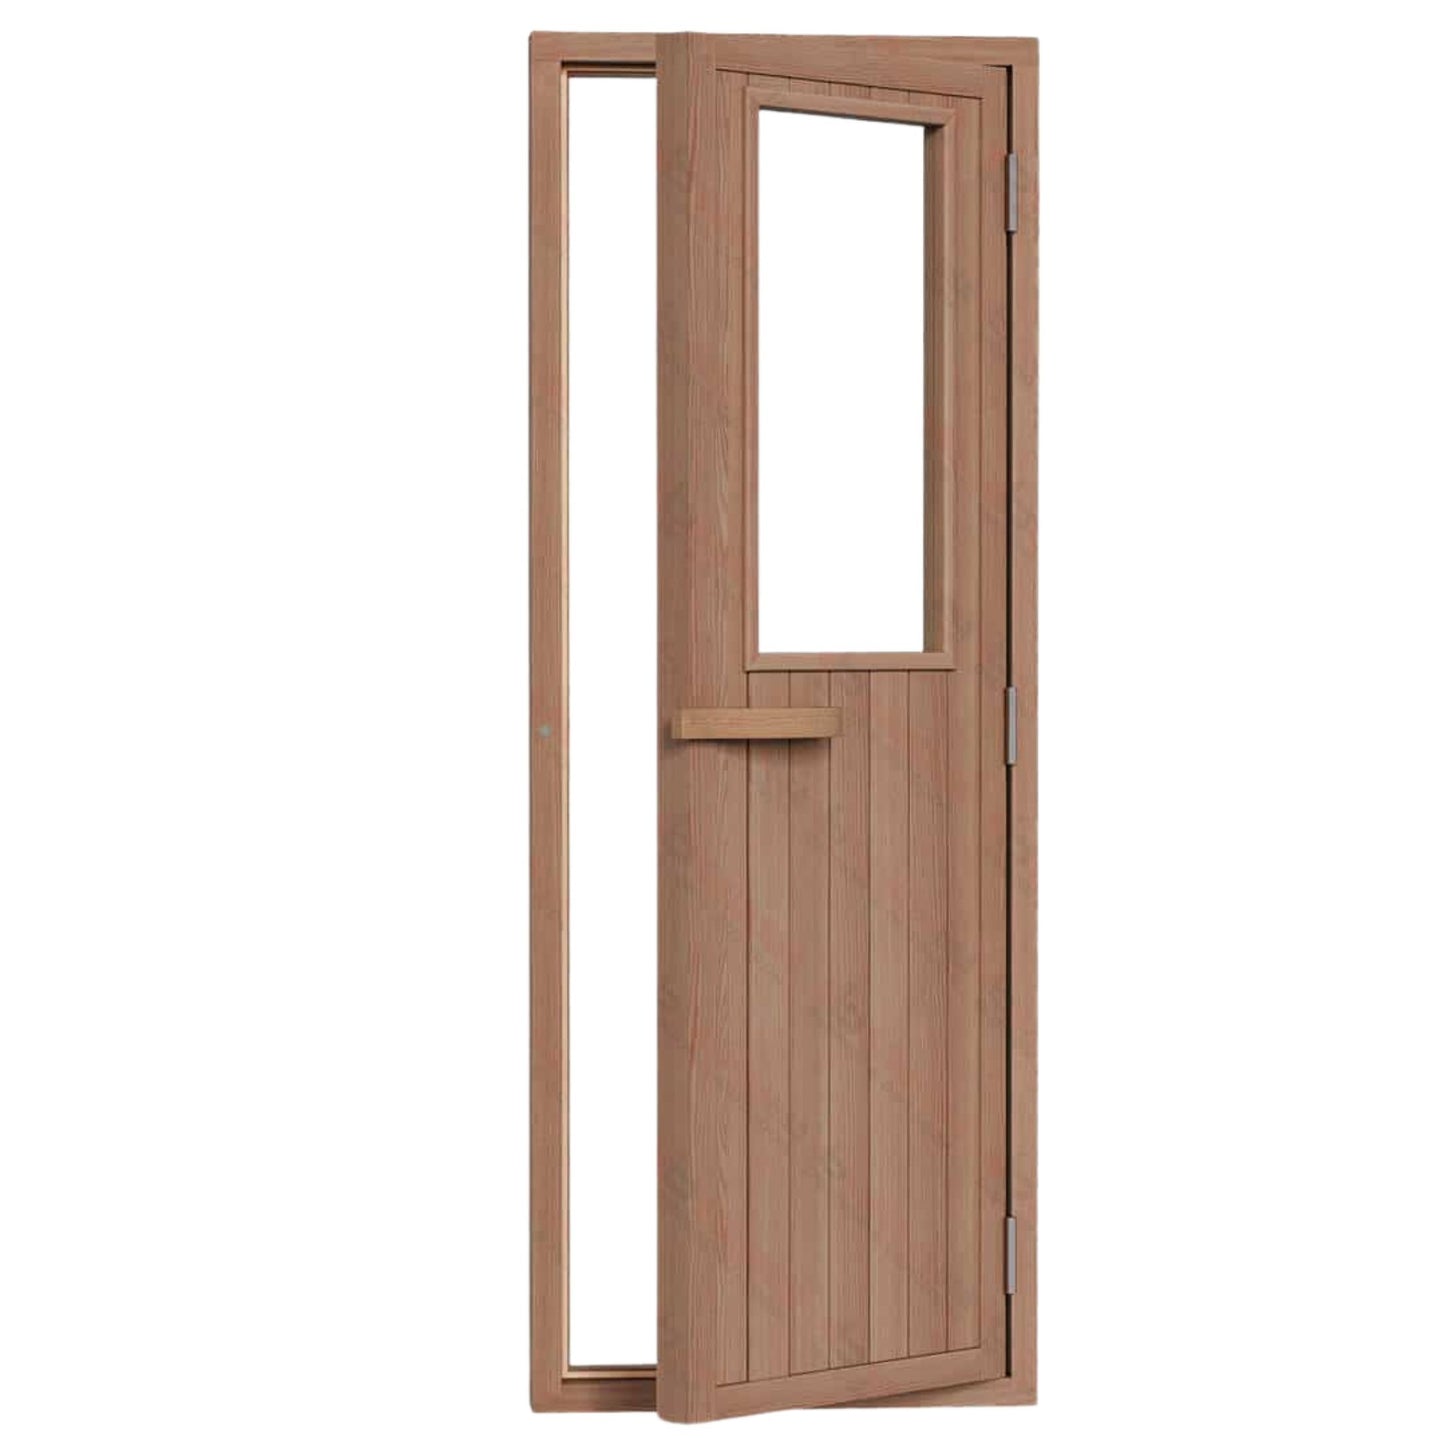 Right Side Cedar Sauna Door With Glass